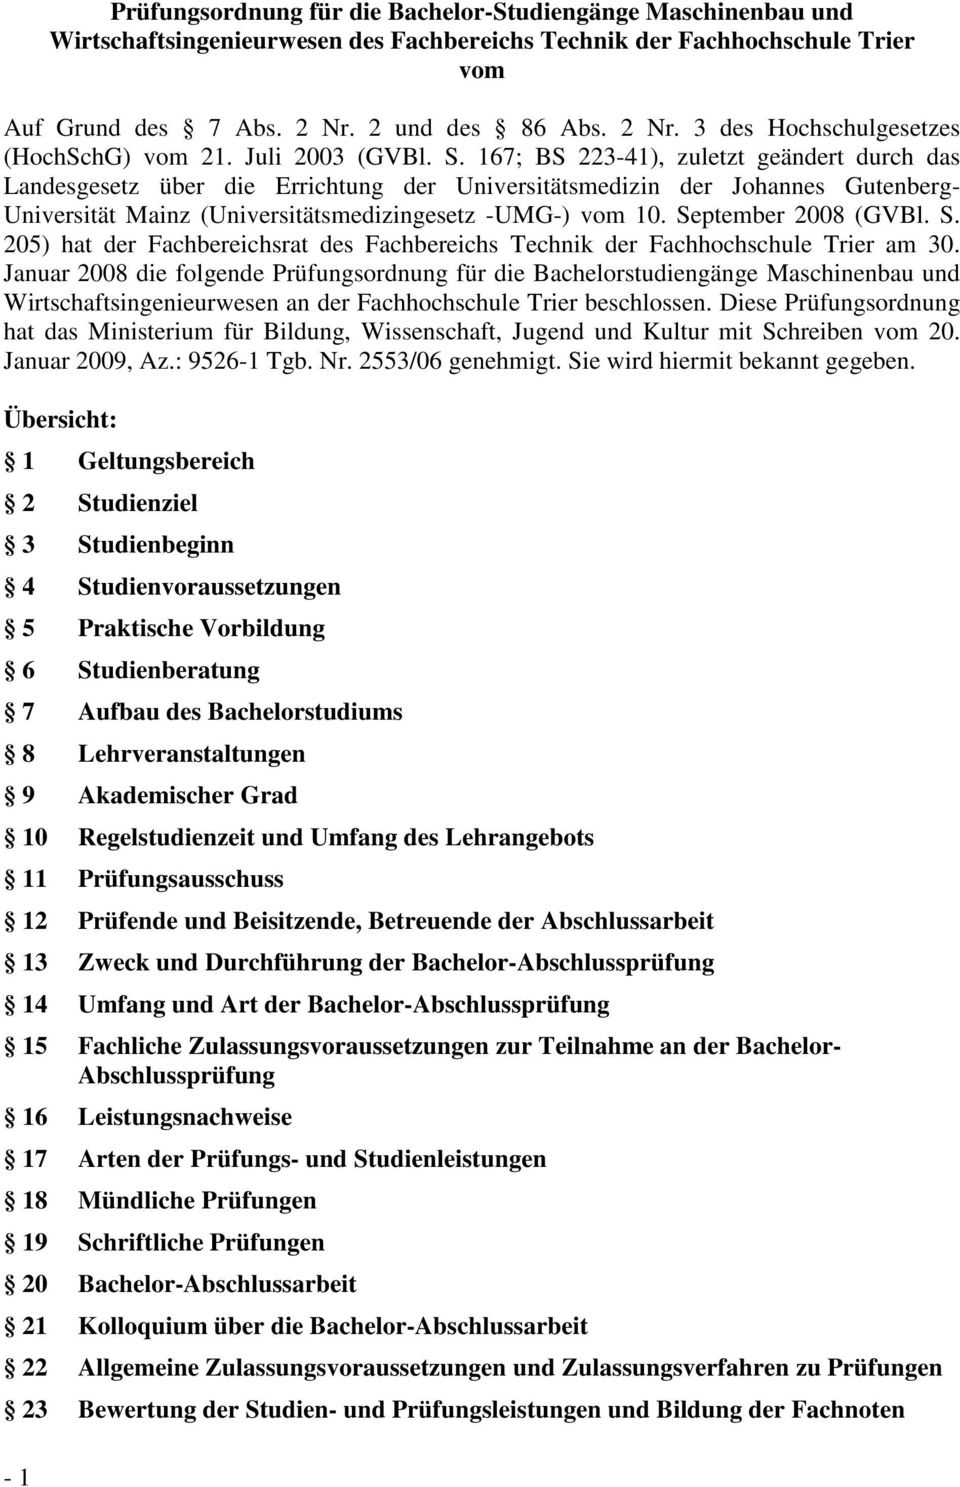 167; BS 223-41), zuletzt geändert durch das Landesgesetz über die Errichtung der Universitätsmedizin der Johannes Gutenberg- Universität Mainz (Universitätsmedizingesetz -UMG-) vom 10.